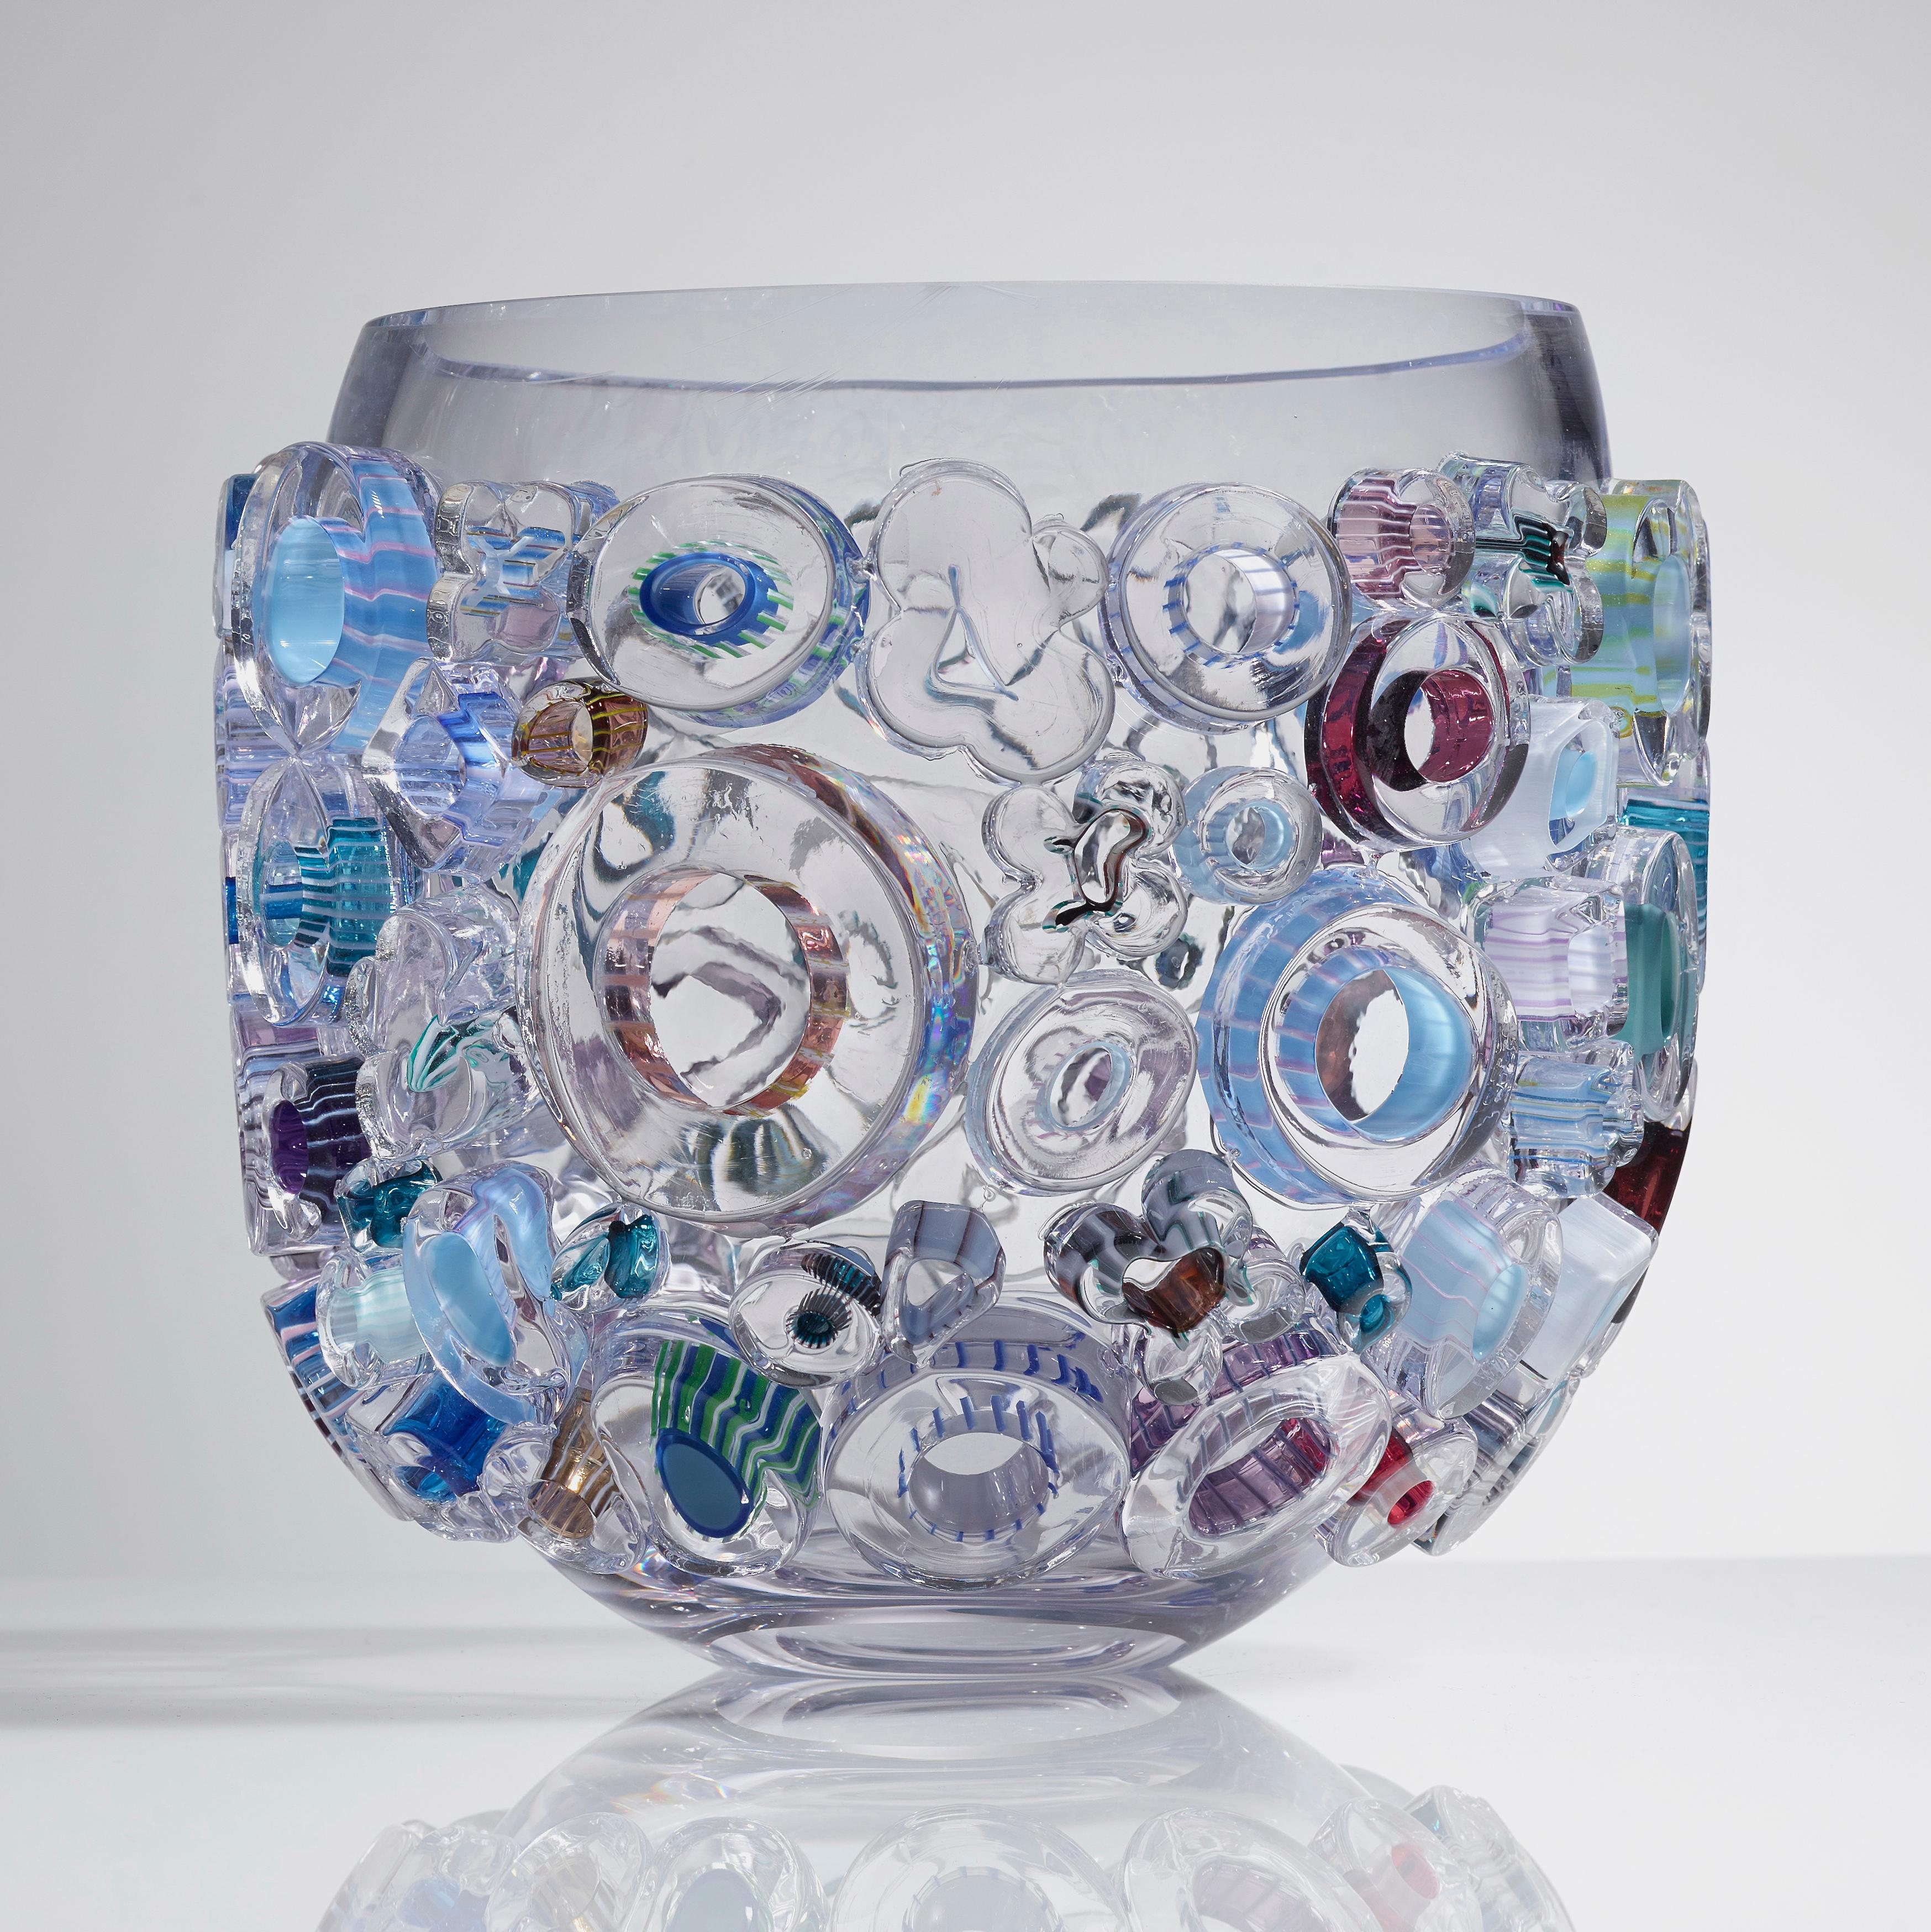 Little Common Ray Blue ist eine einzigartige mundgeblasene und handgefertigte Vase & Kunstwerk / Schale / Tafelaufsatz von der deutschen Künstlerin Sabine Lintzen. Die ursprüngliche innere Form ist aus klarem Glas mundgeblasen und mit verschiedenen,